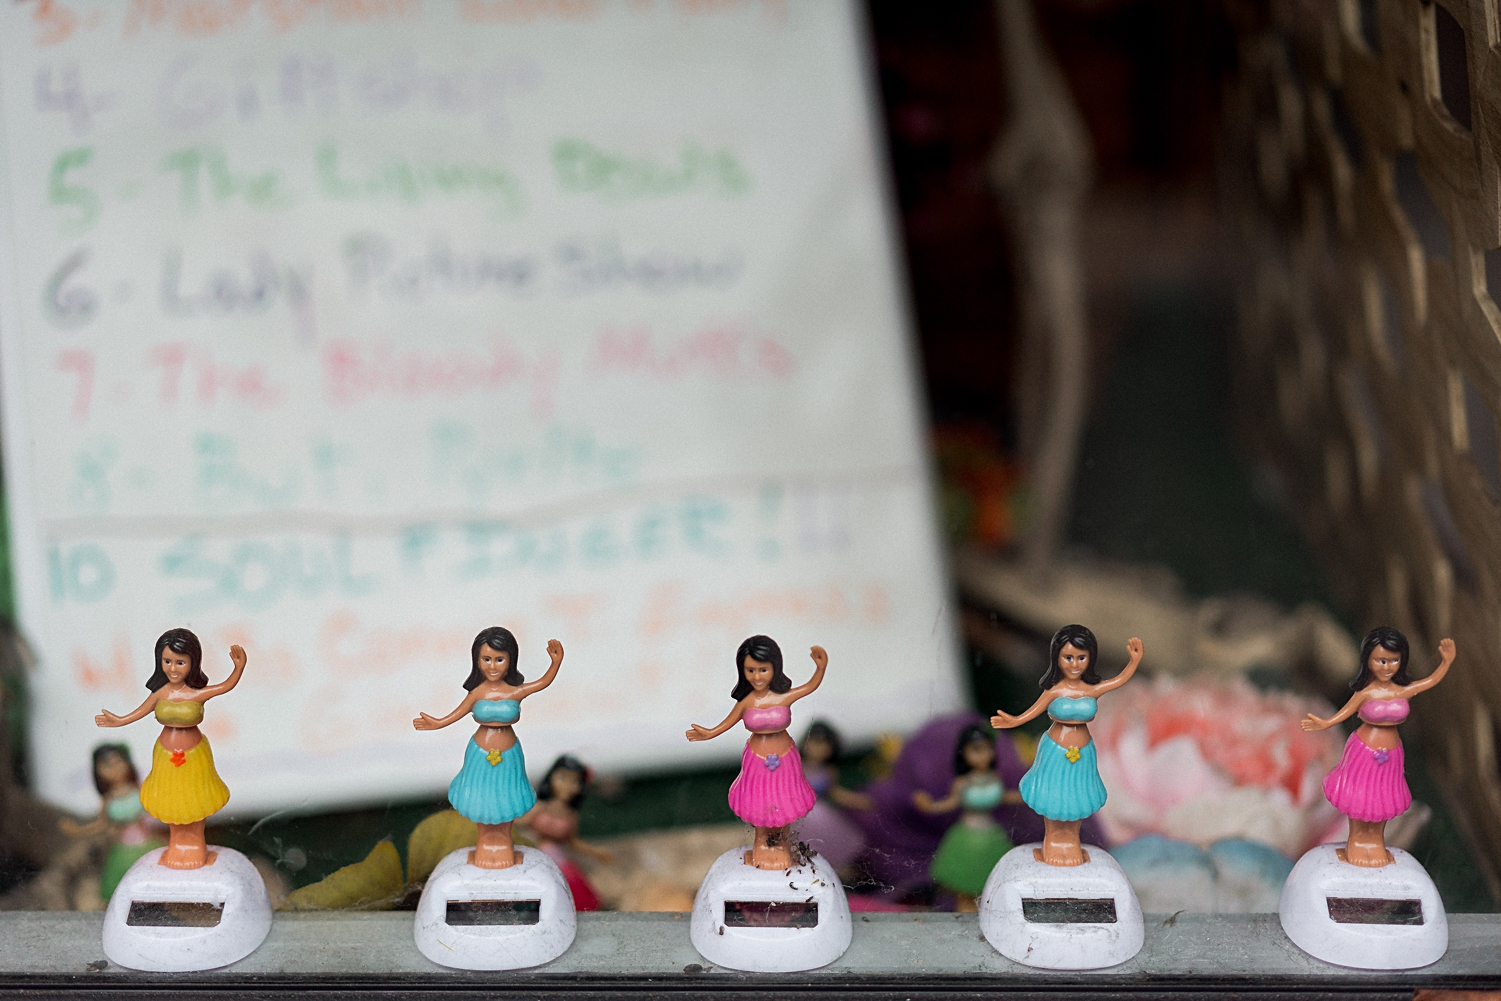 small hula girl figures in window display